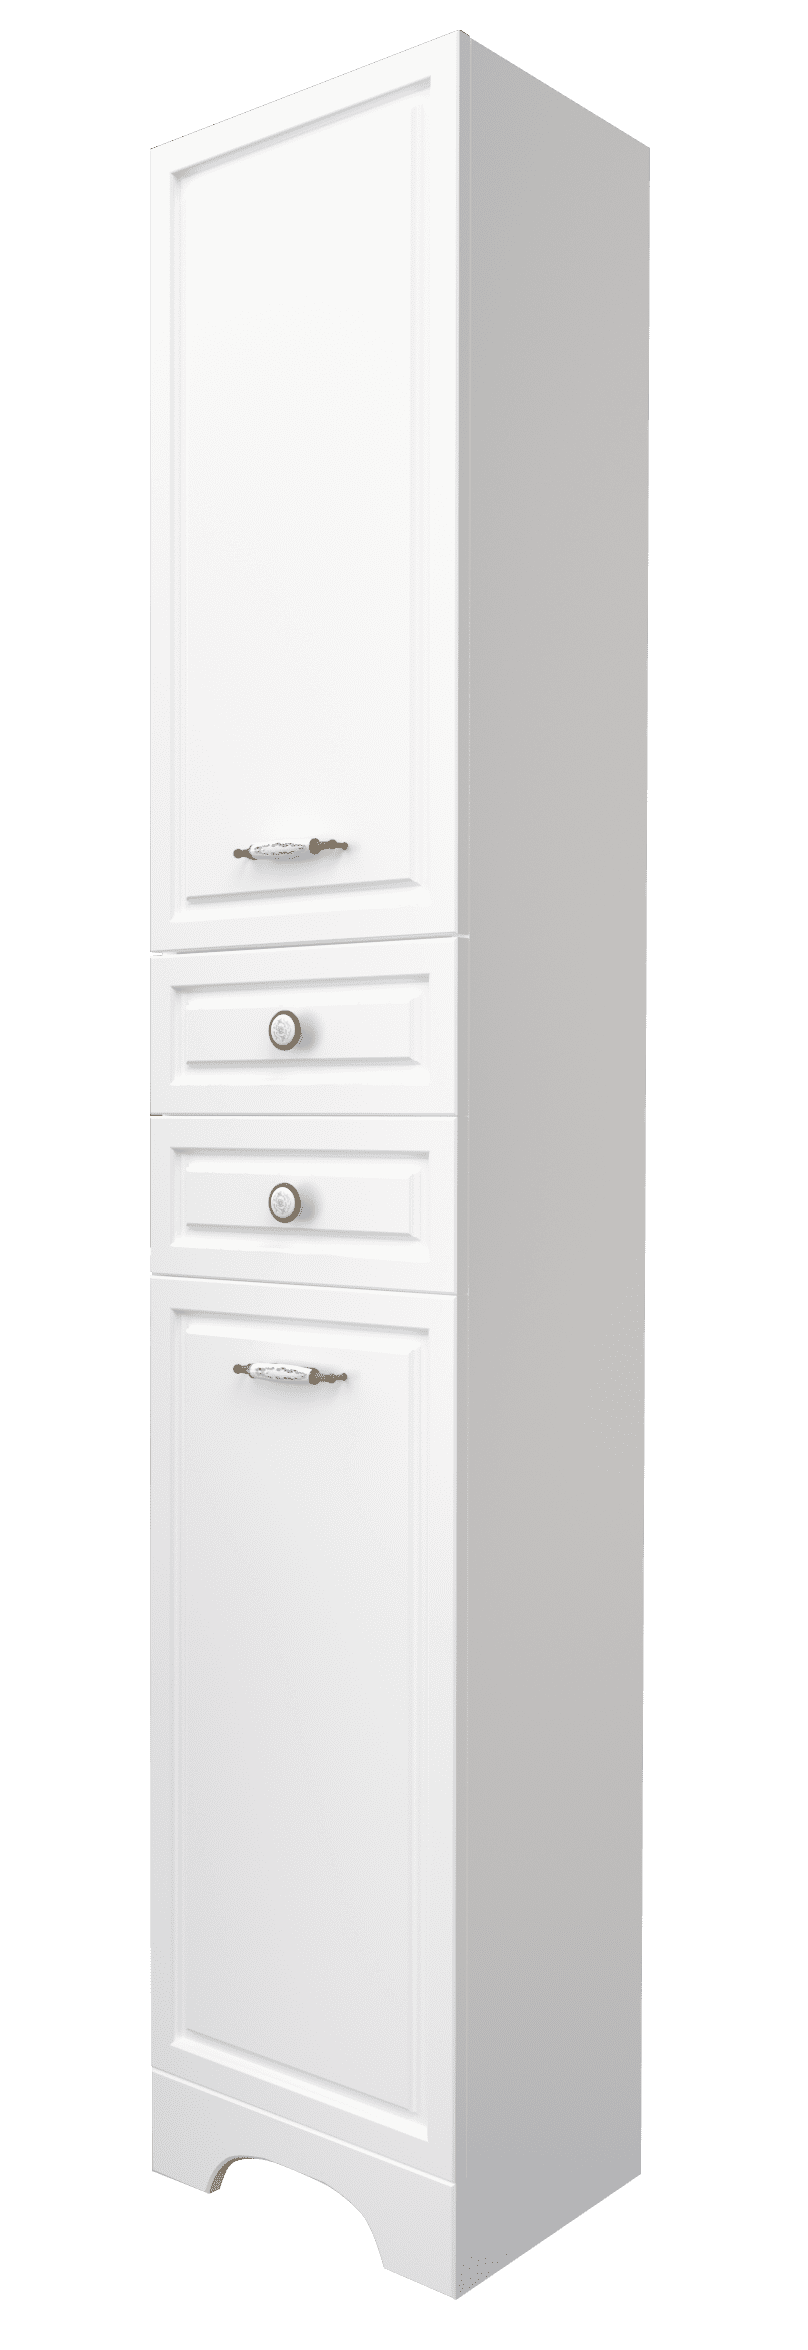 Пенал в ванную 1Marka Прованс напольный 2 дверцы 2 ящика цвет Белый глянец У59770